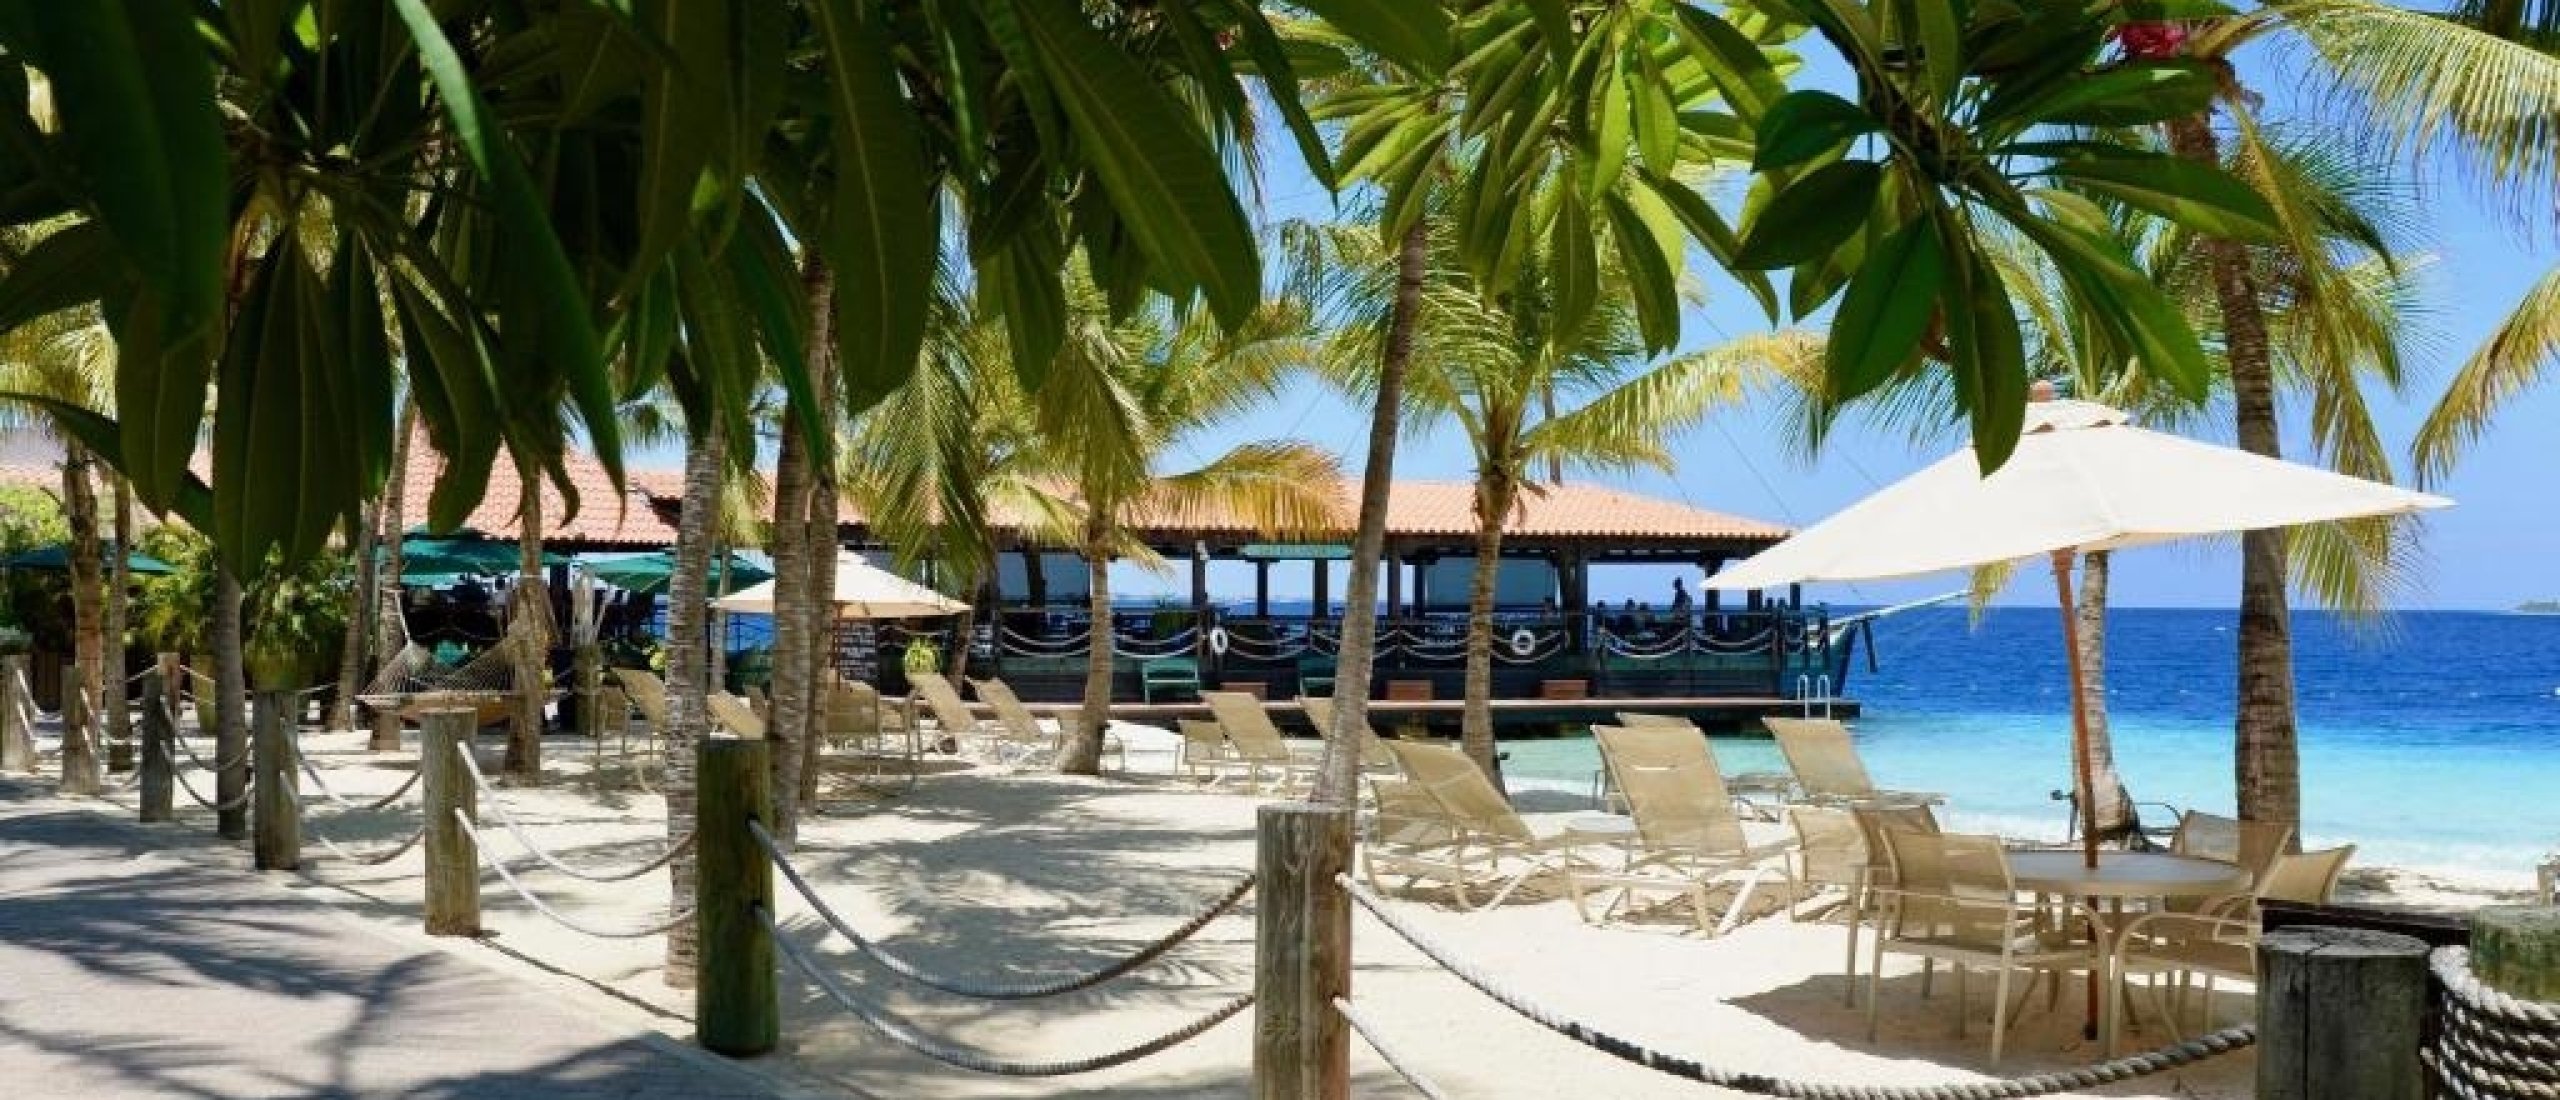 Harbour Village Beach Club Bonaire